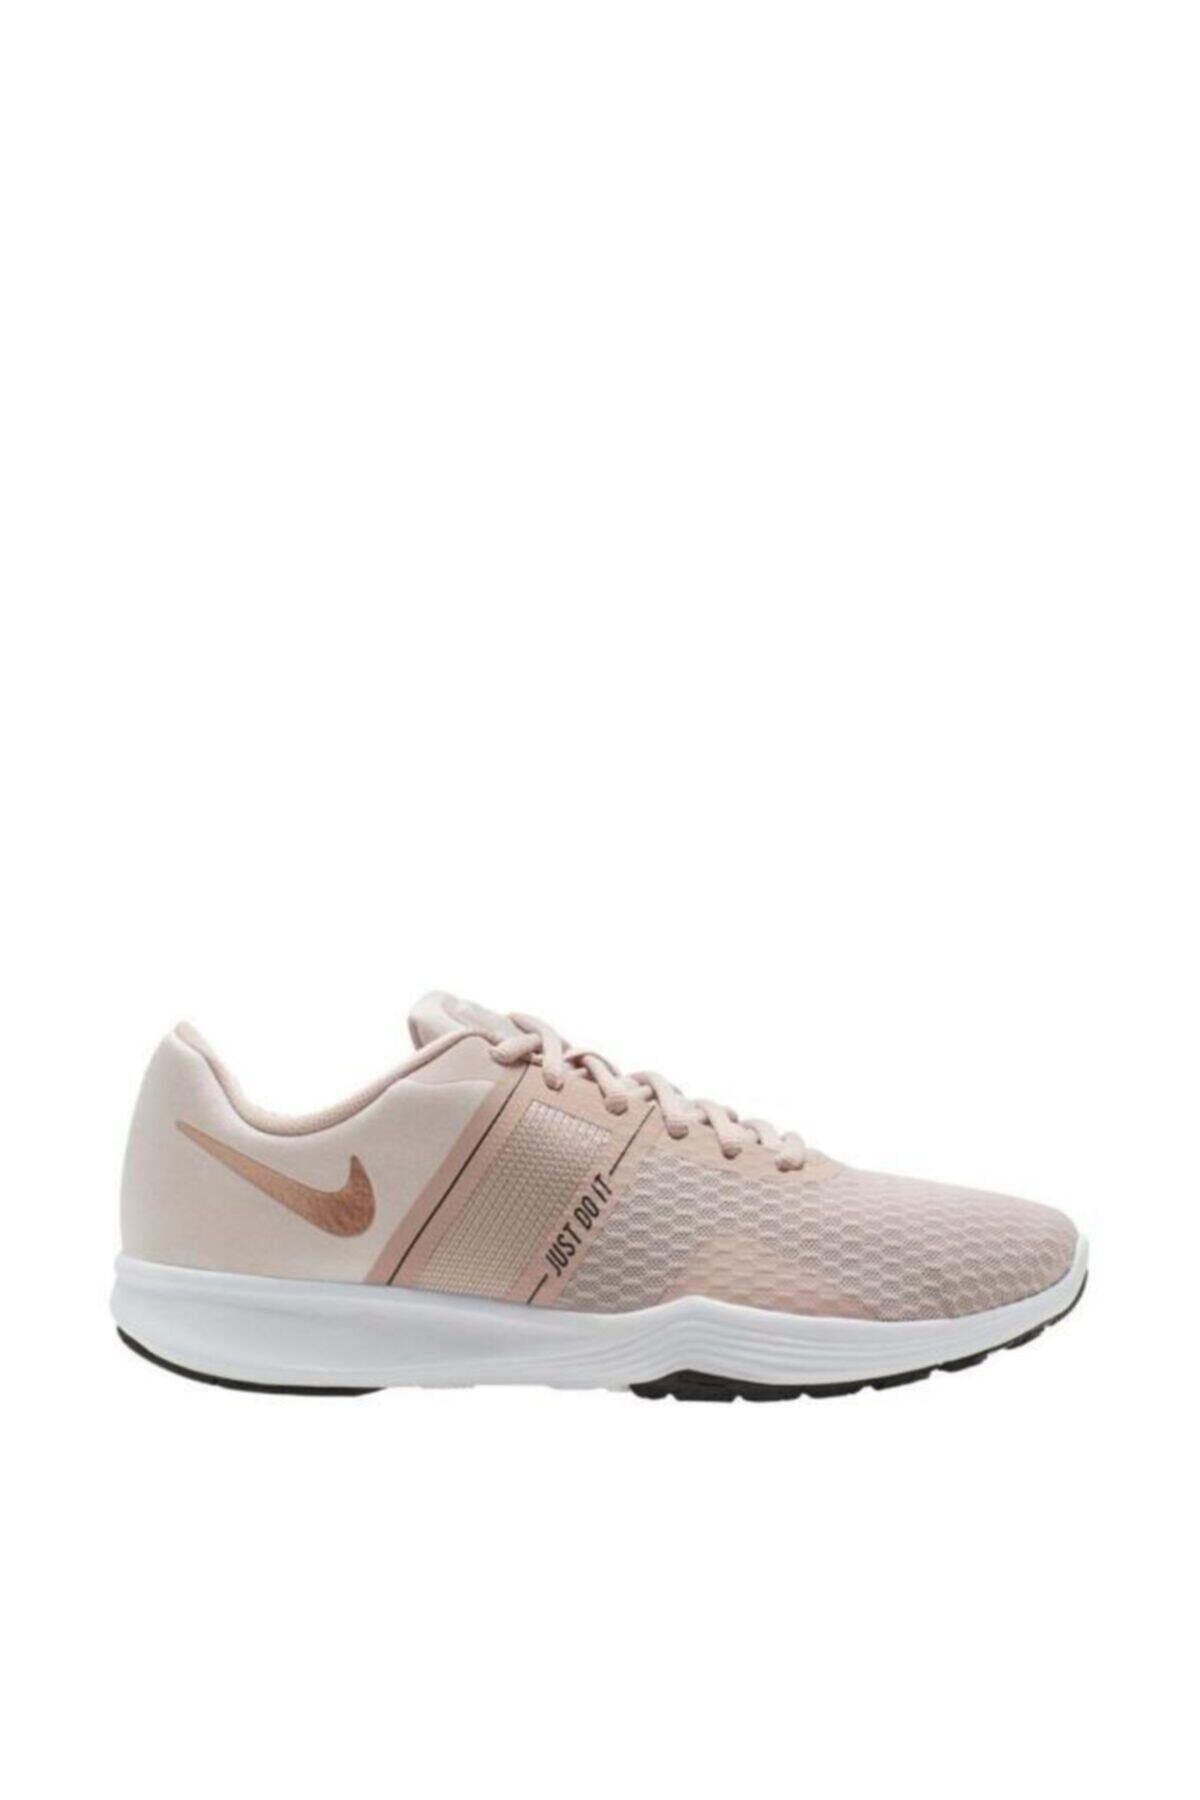 Nike City Trainer 2 Aa7775-202 Kadın Koşu Ayakkabısı